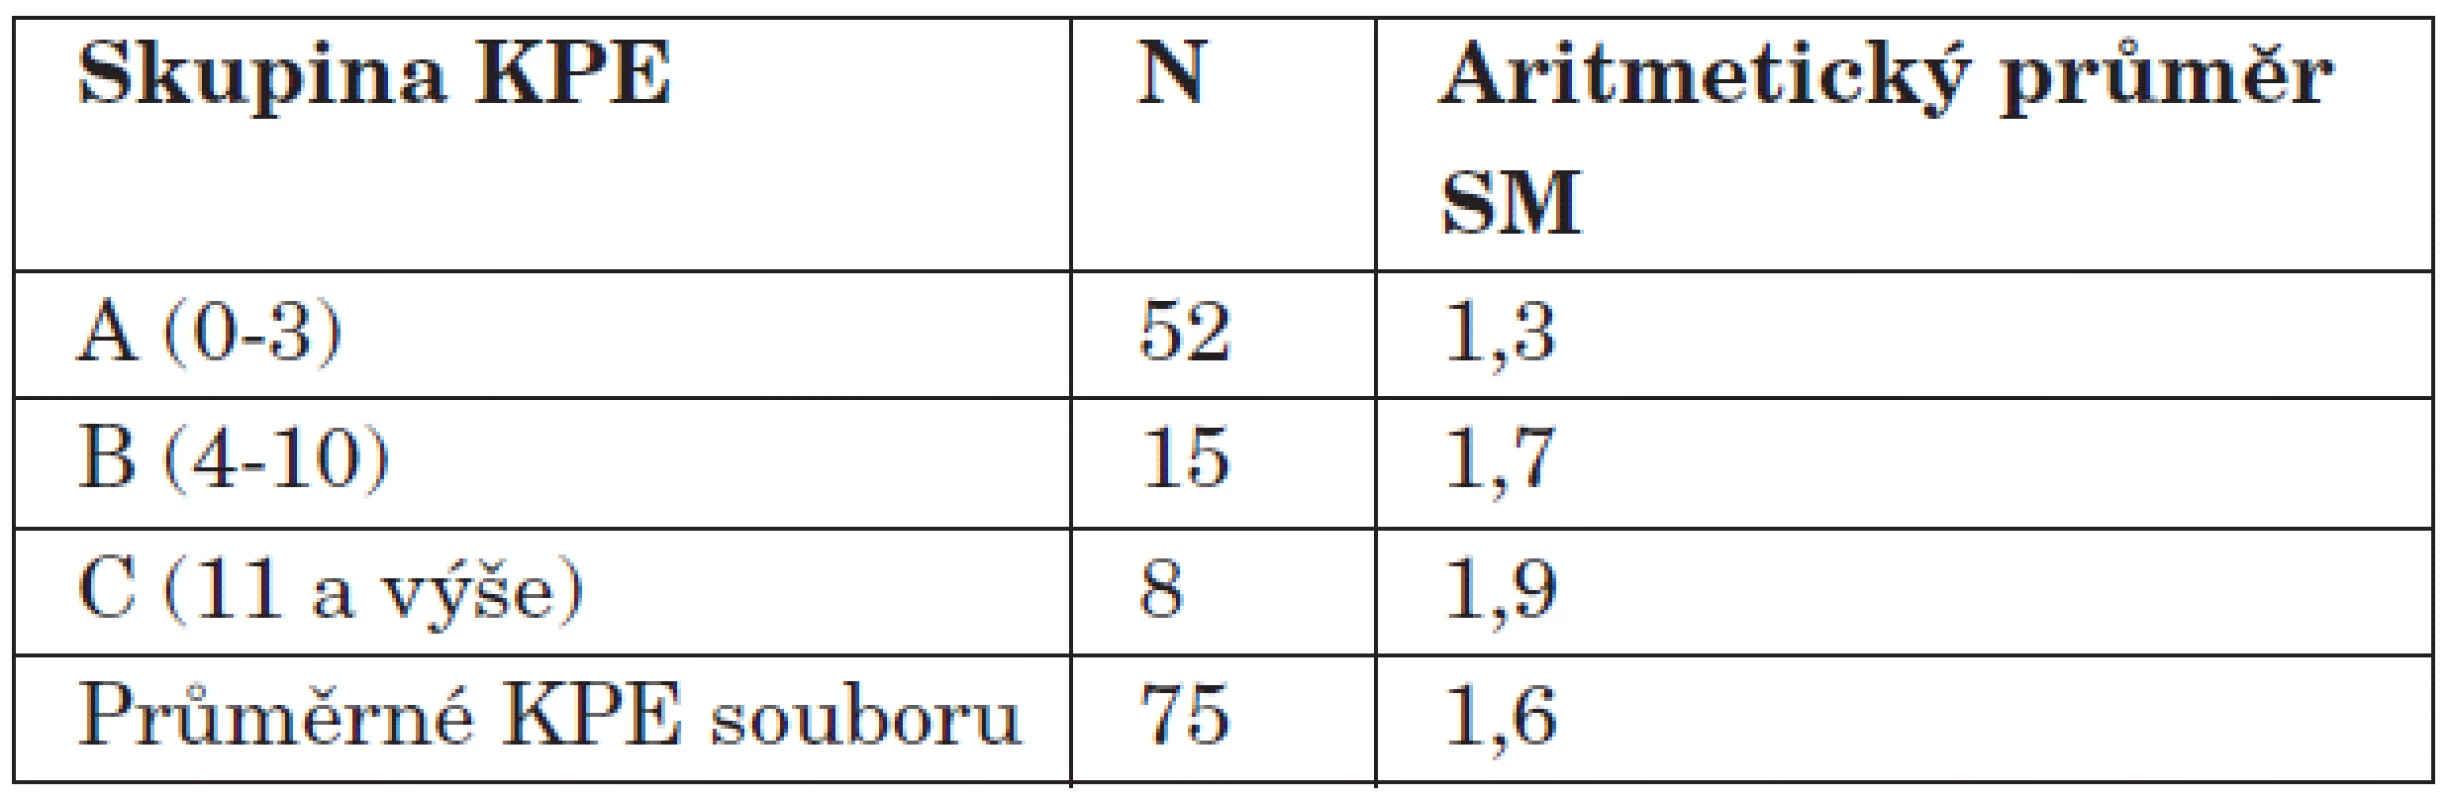 Aritmetické průměry SM pro jednotlivé skupiny KPE.